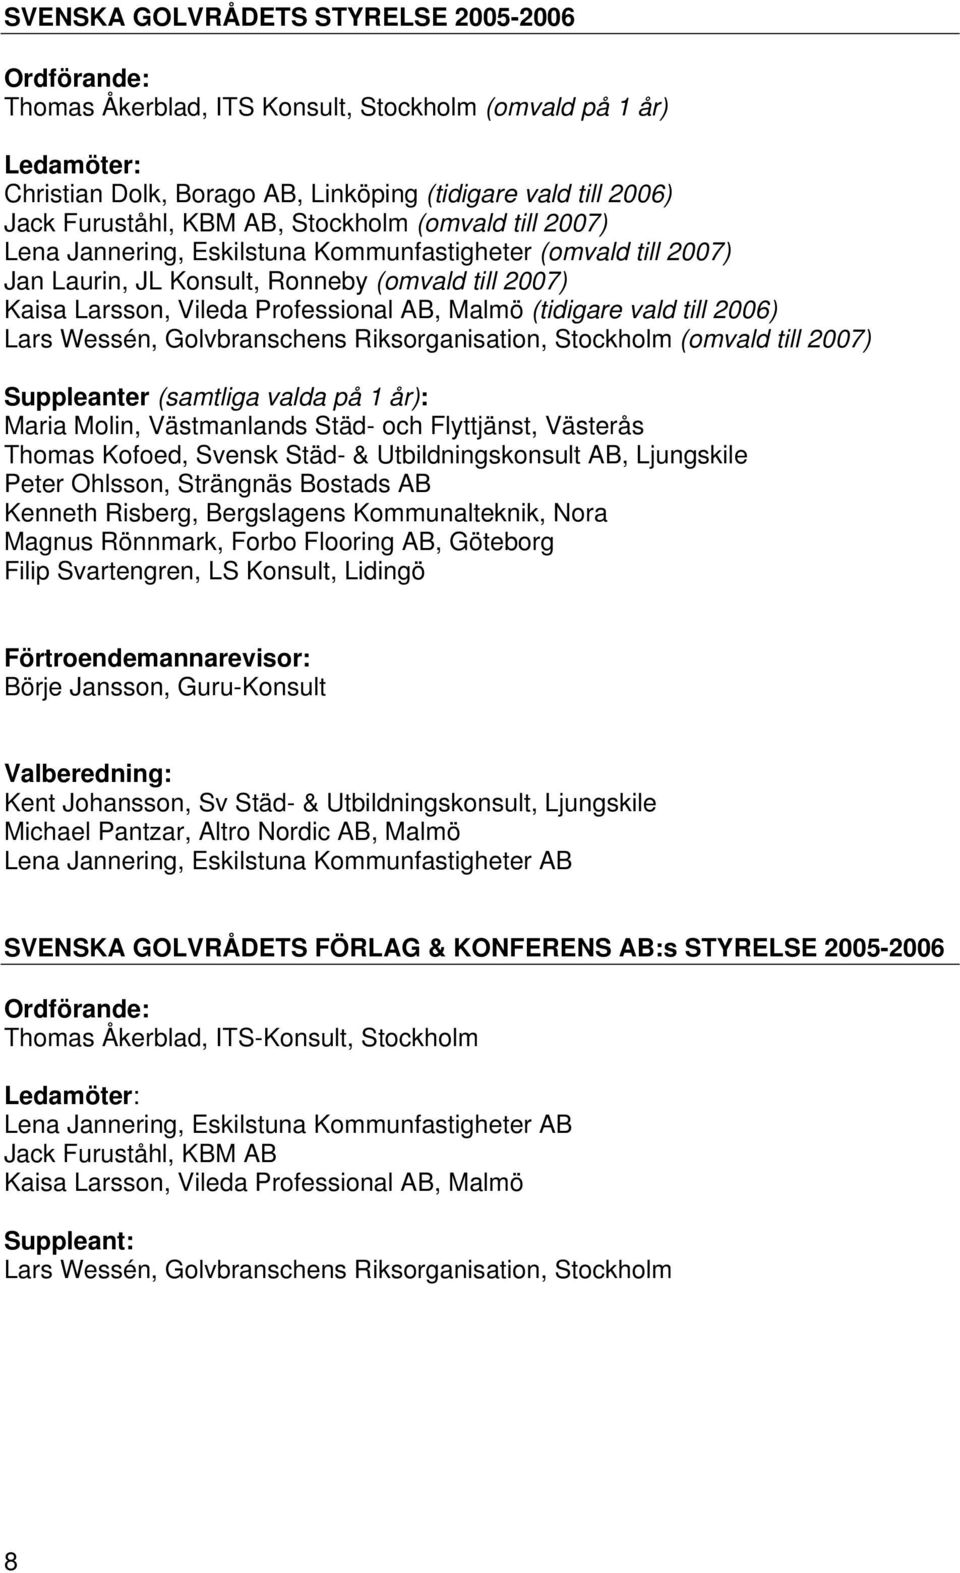 (tidigare vald till 2006) Lars Wessén, Golvbranschens Riksorganisation, Stockholm (omvald till 2007) Suppleanter (samtliga valda på 1 år): Maria Molin, Västmanlands Städ- och Flyttjänst, Västerås